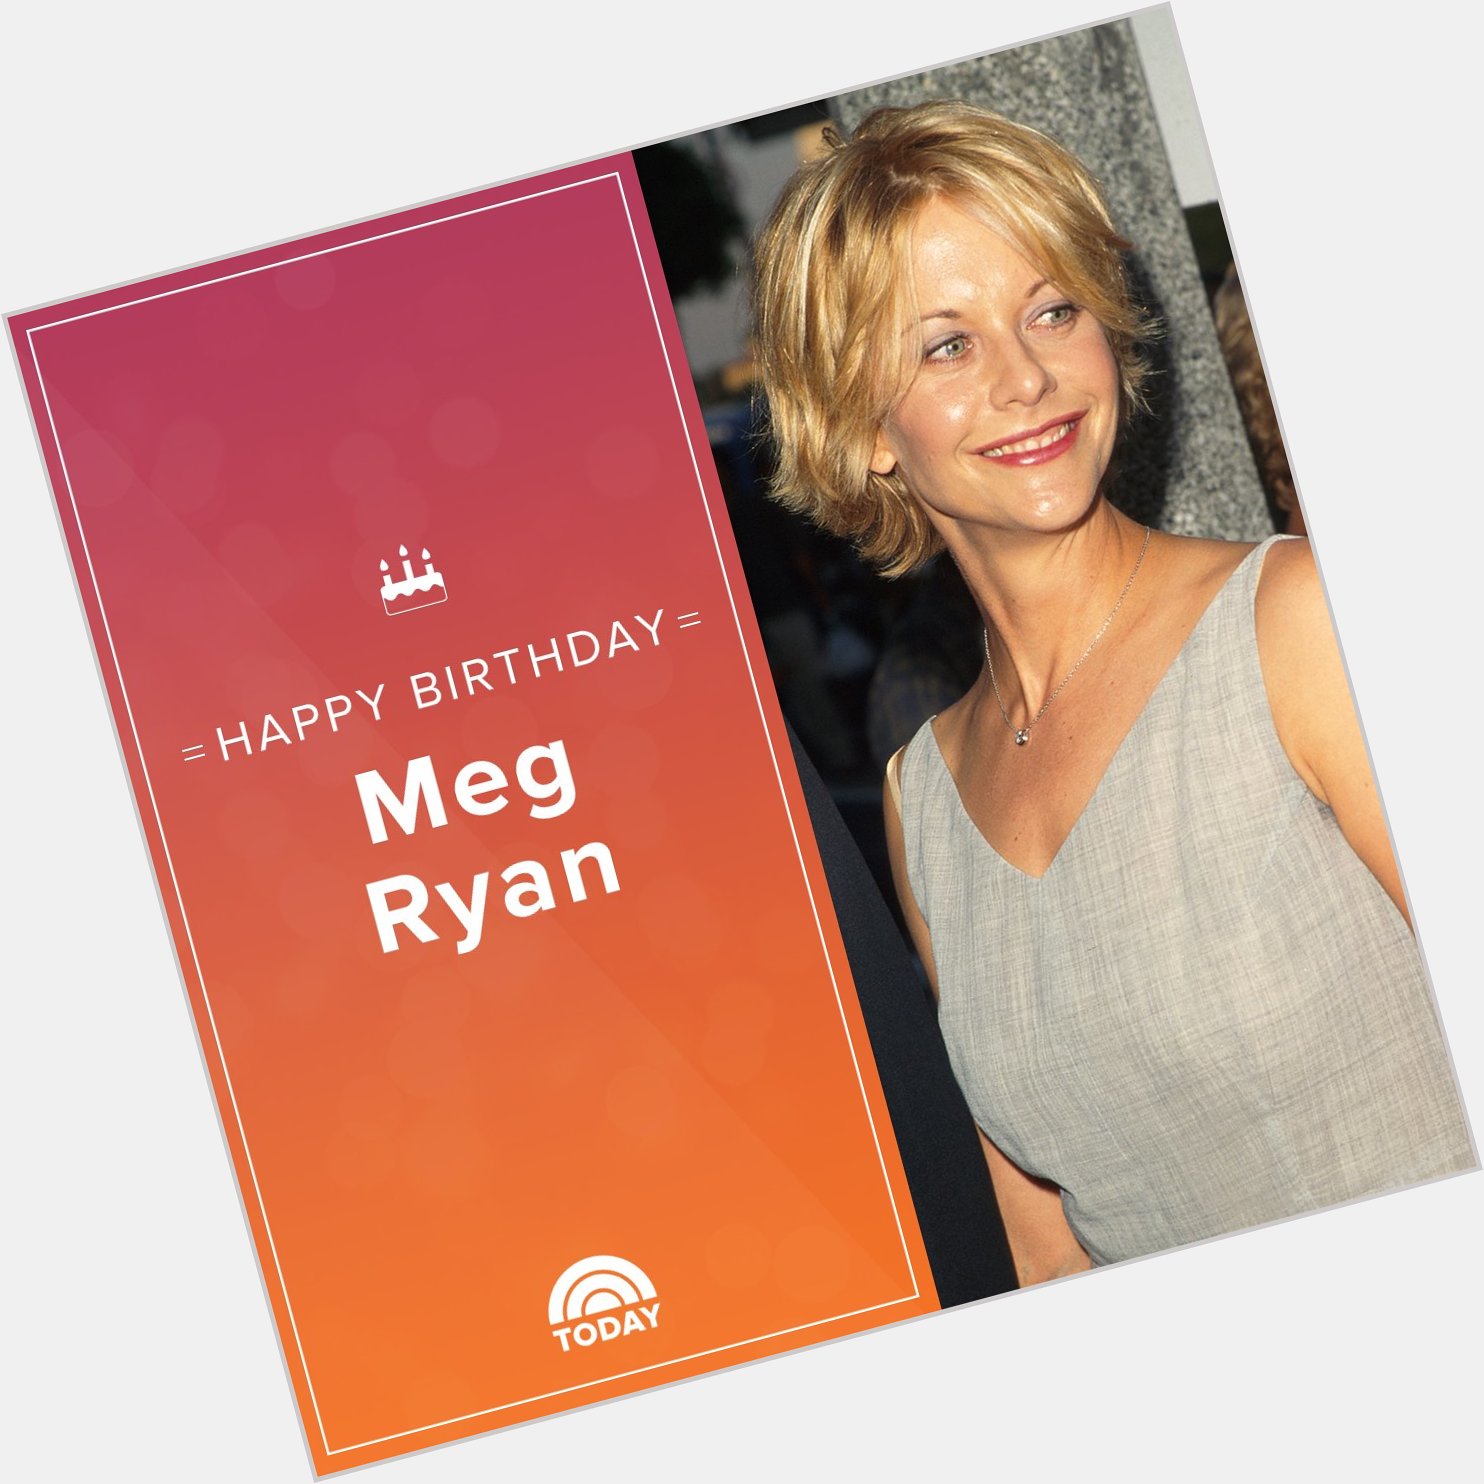 Happy birthday, Meg Ryan!  